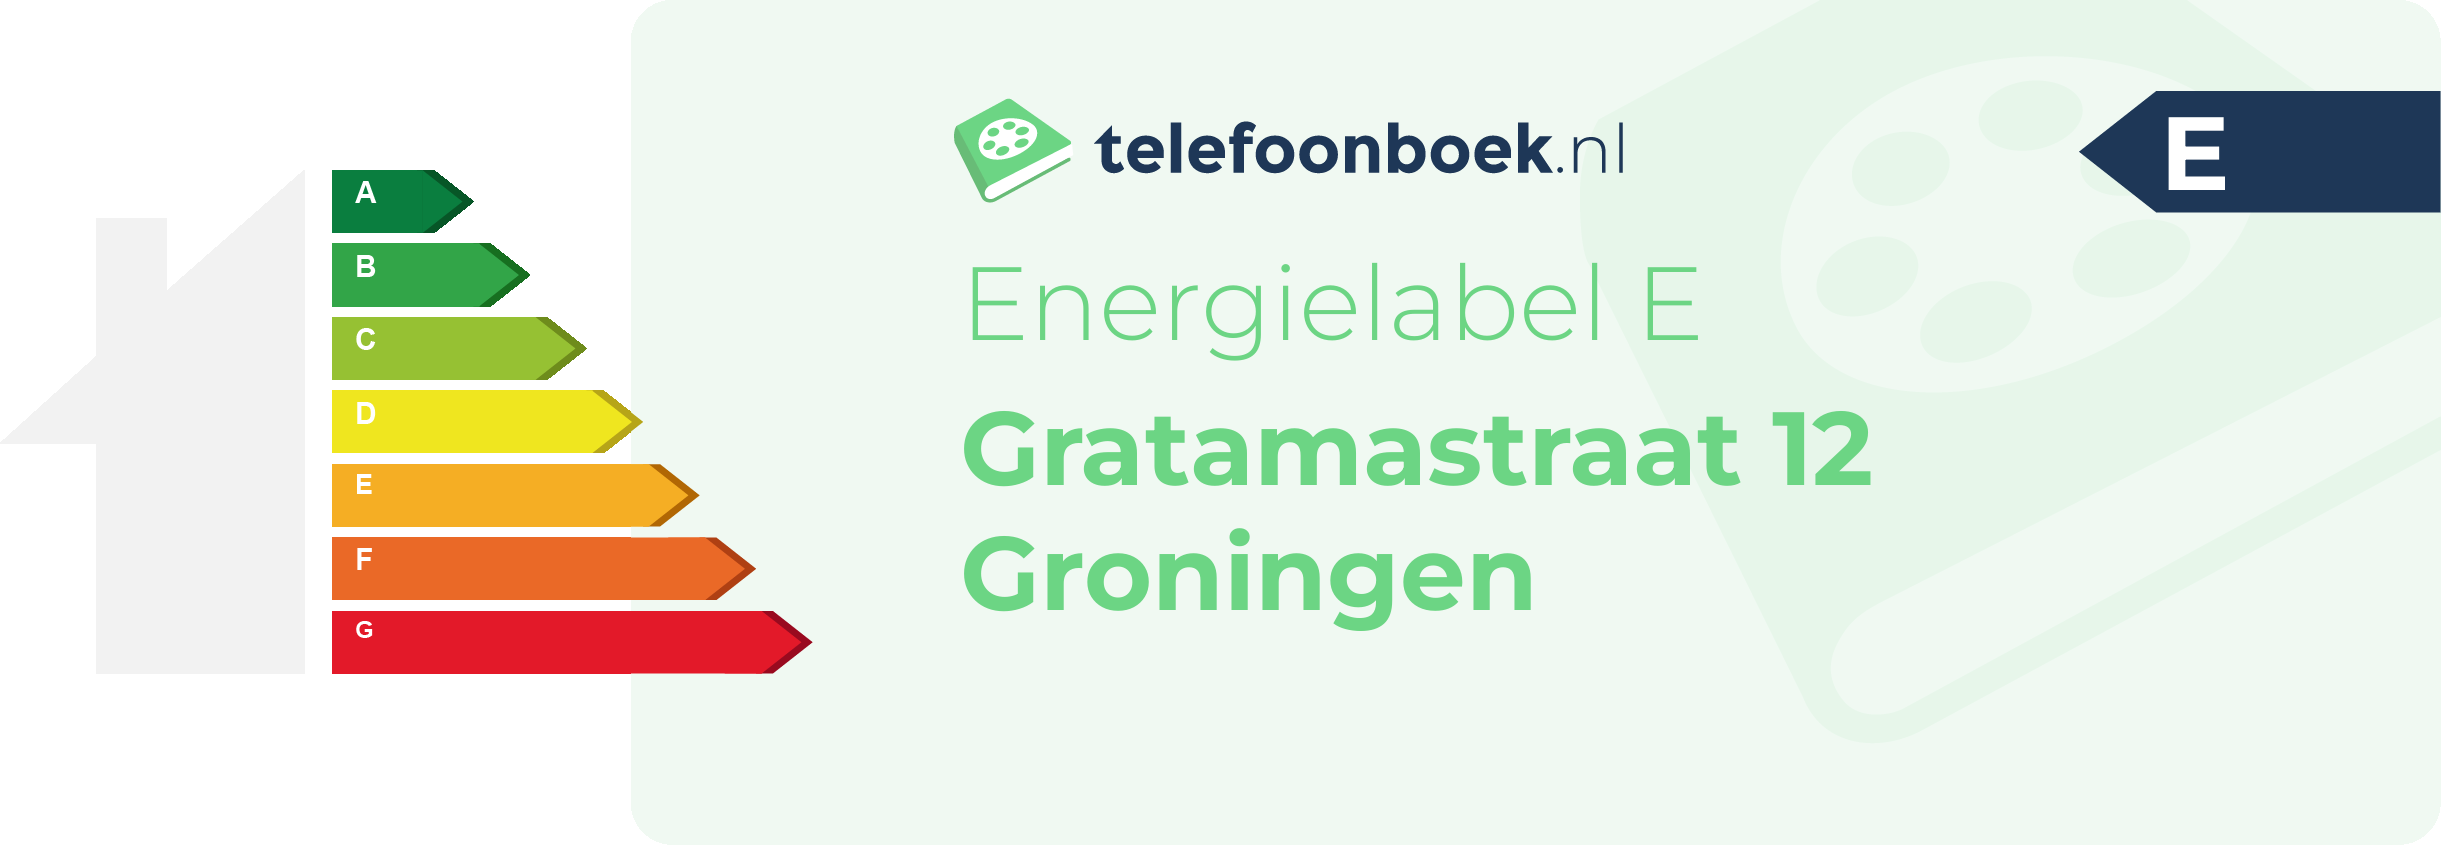 Energielabel Gratamastraat 12 Groningen